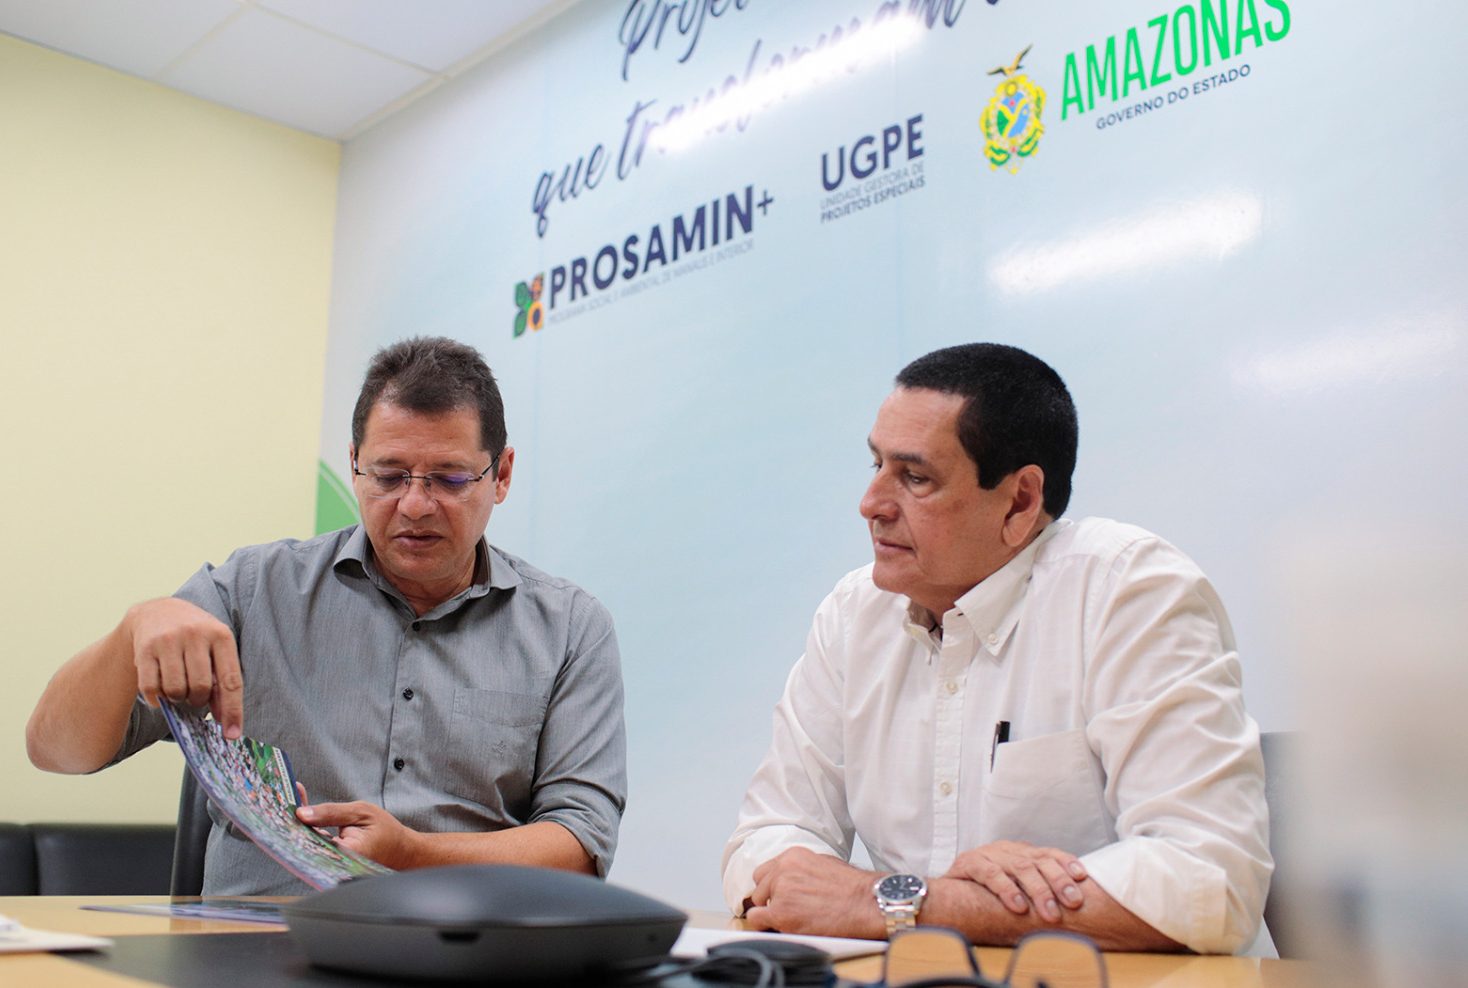 Integração com o novo gestor da Secretaria de Estado de Desenvolvimento Urbano e Metropolitano do Amazonas